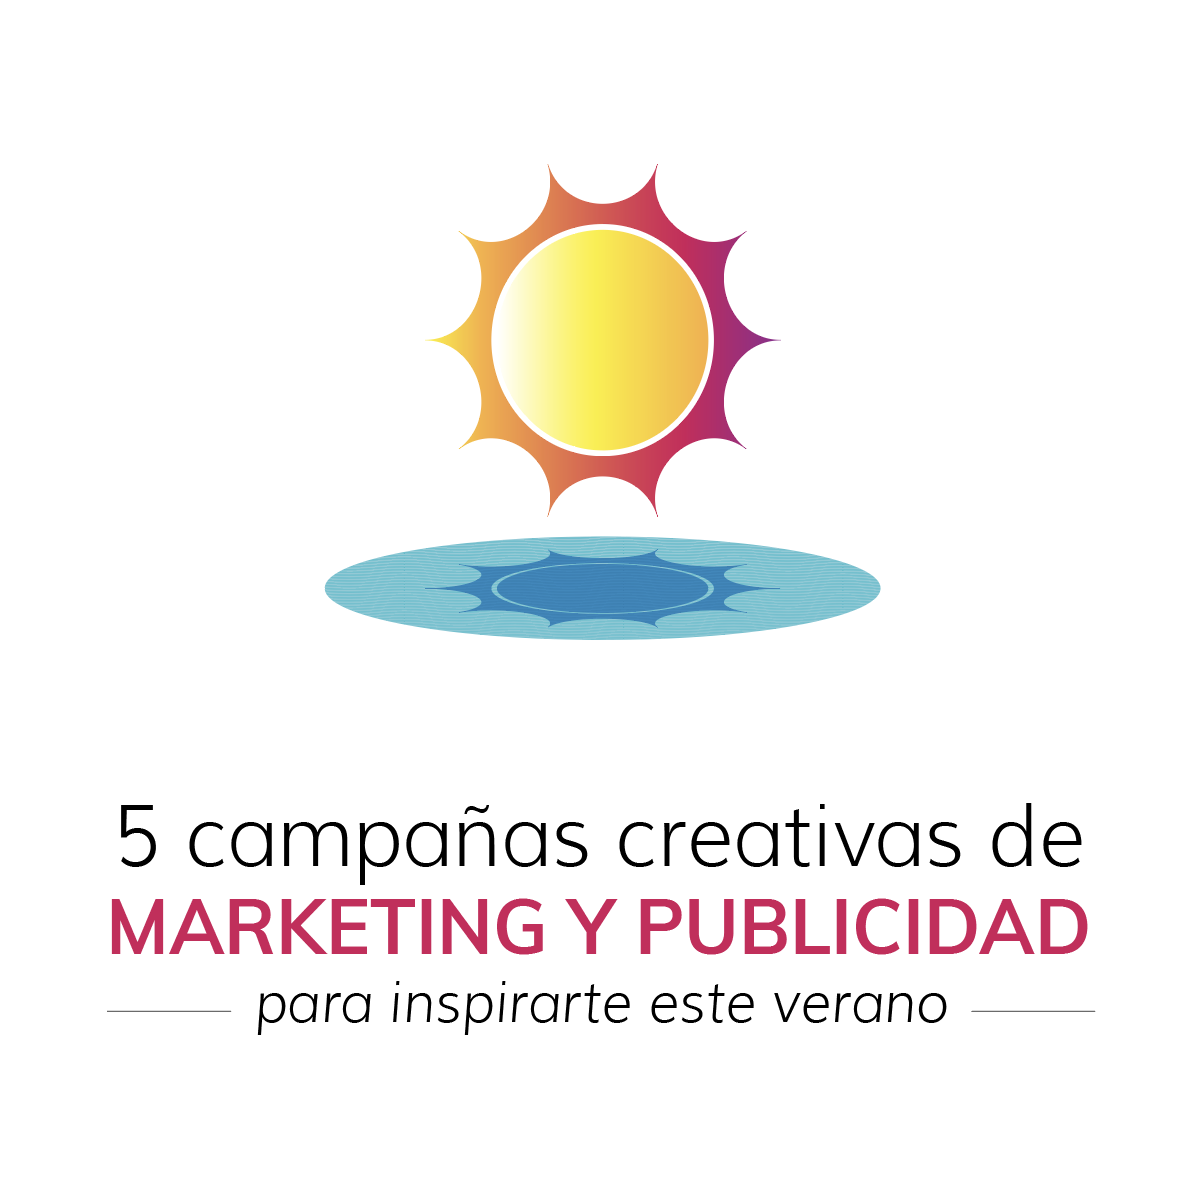 5 campañas de marketing y publicidad creativas para inspirarte este verano  - Idearium®